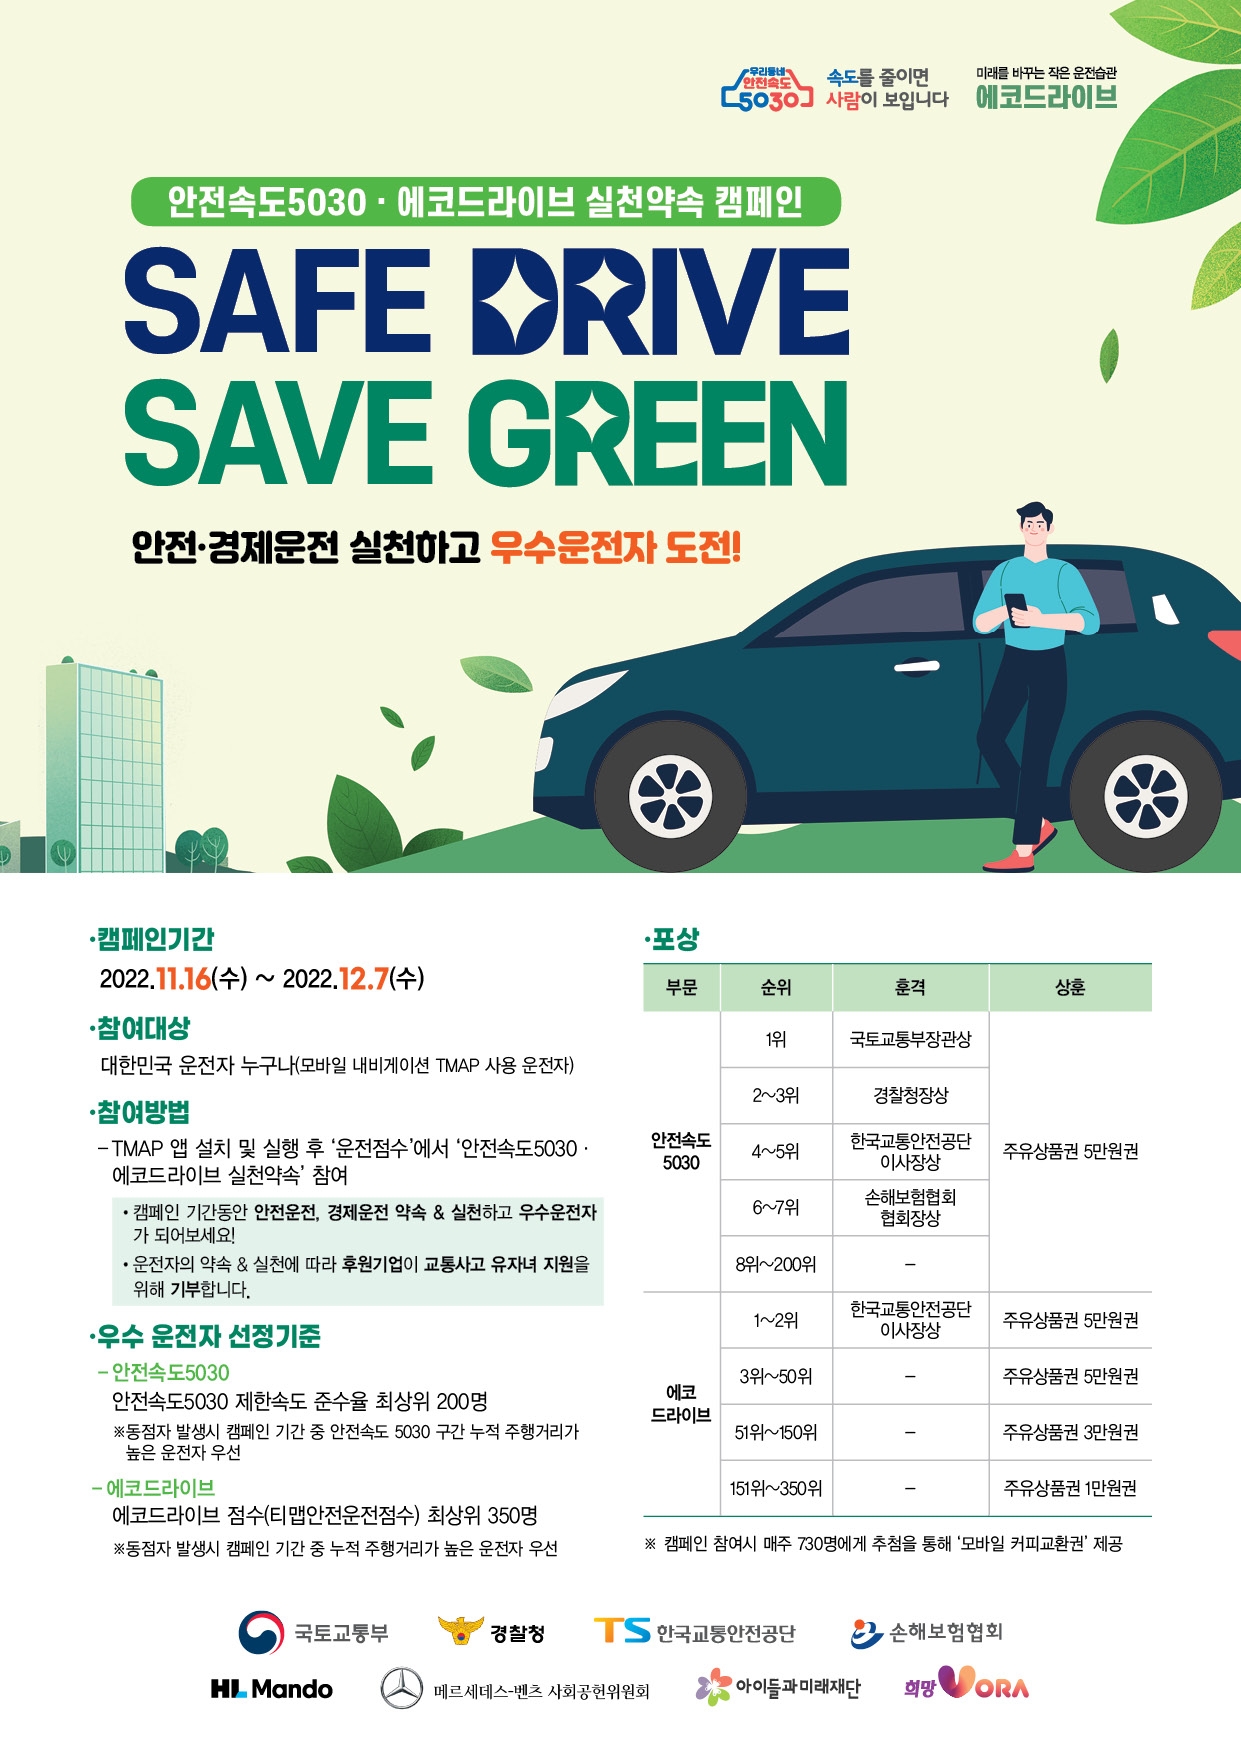 한국교통안전공단, “안전·경제운전 실천하면 주유권 지원” 캠페인